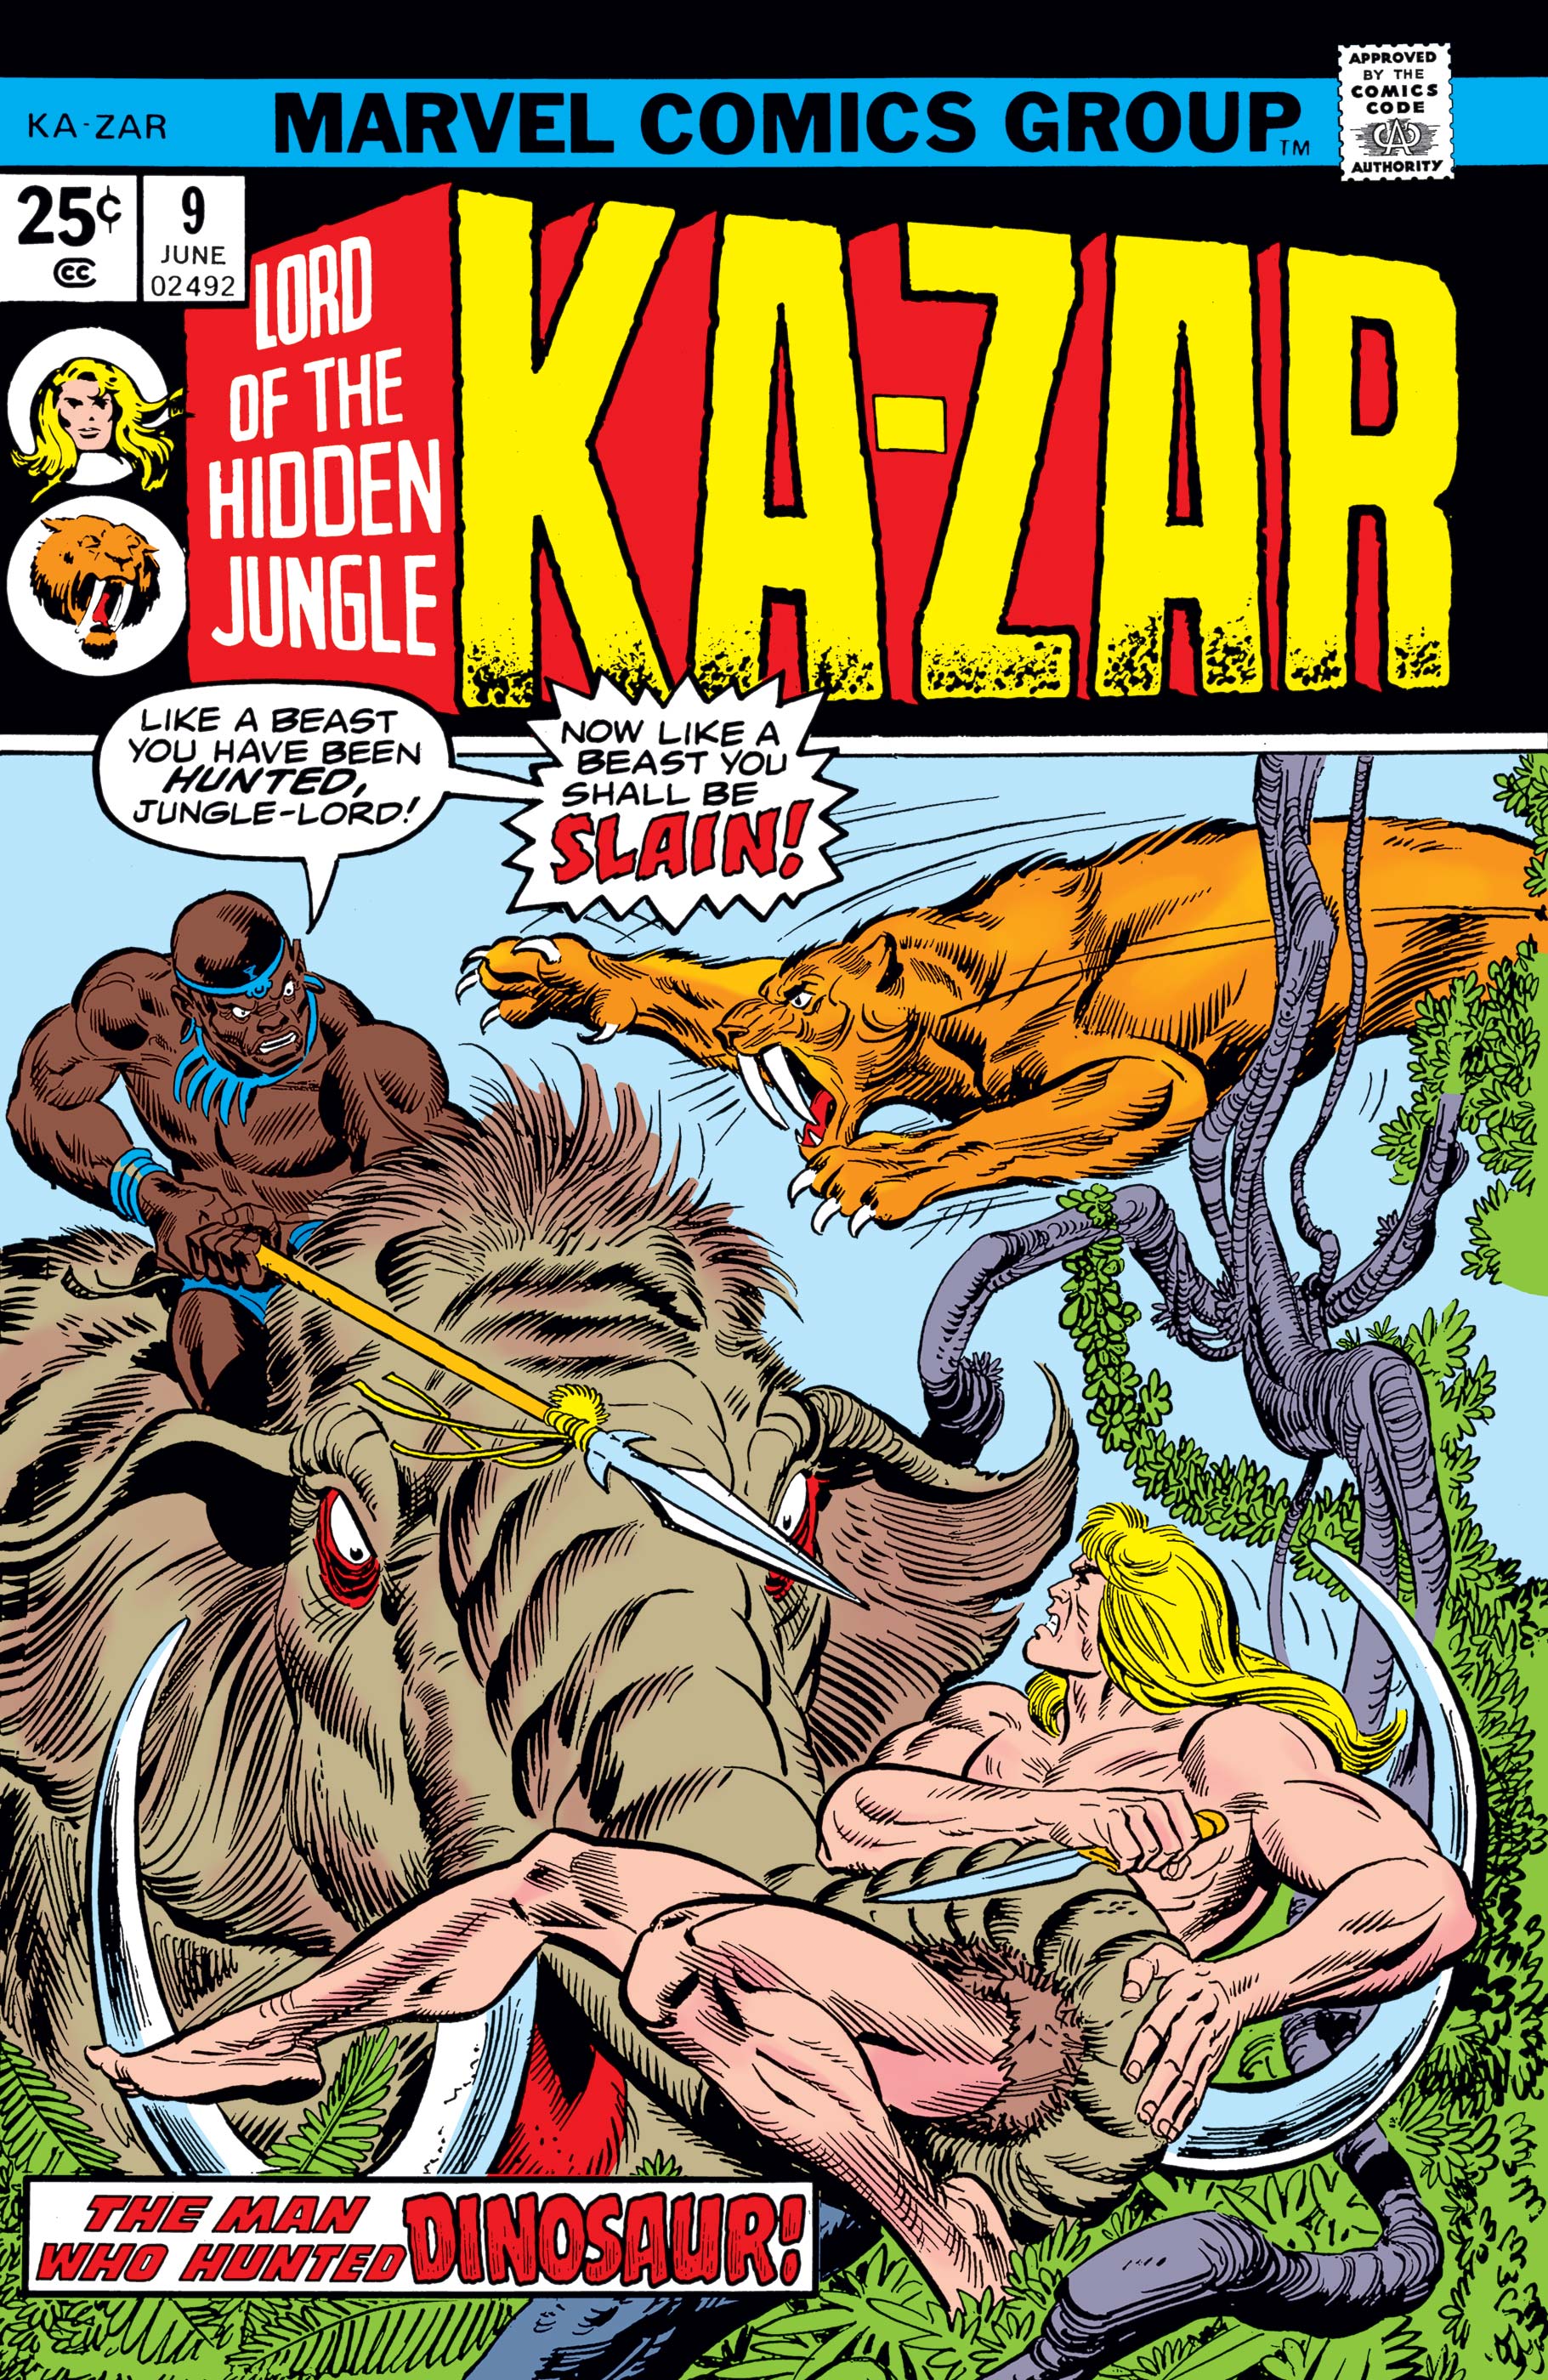 Ka-Zar (1974) #9